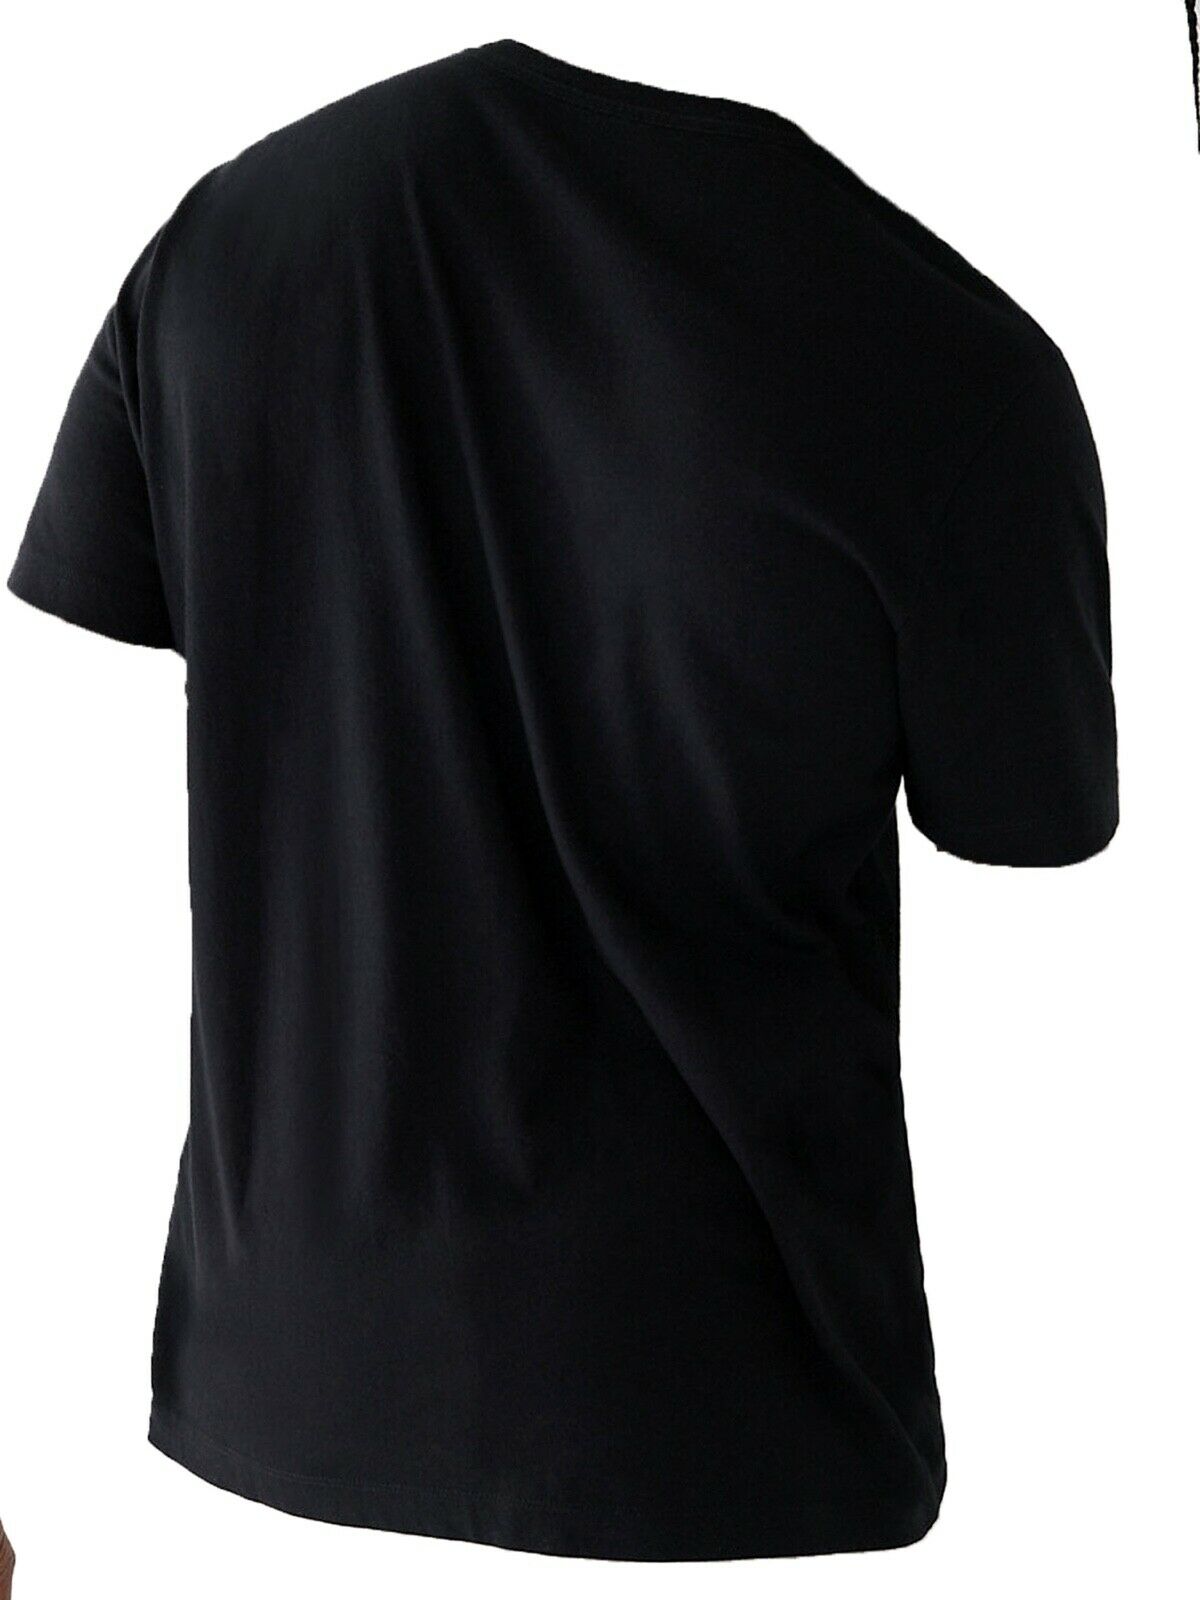 True Religion Men's Horseshoe Logo Short Sleeve T-Shirt in Black 105296